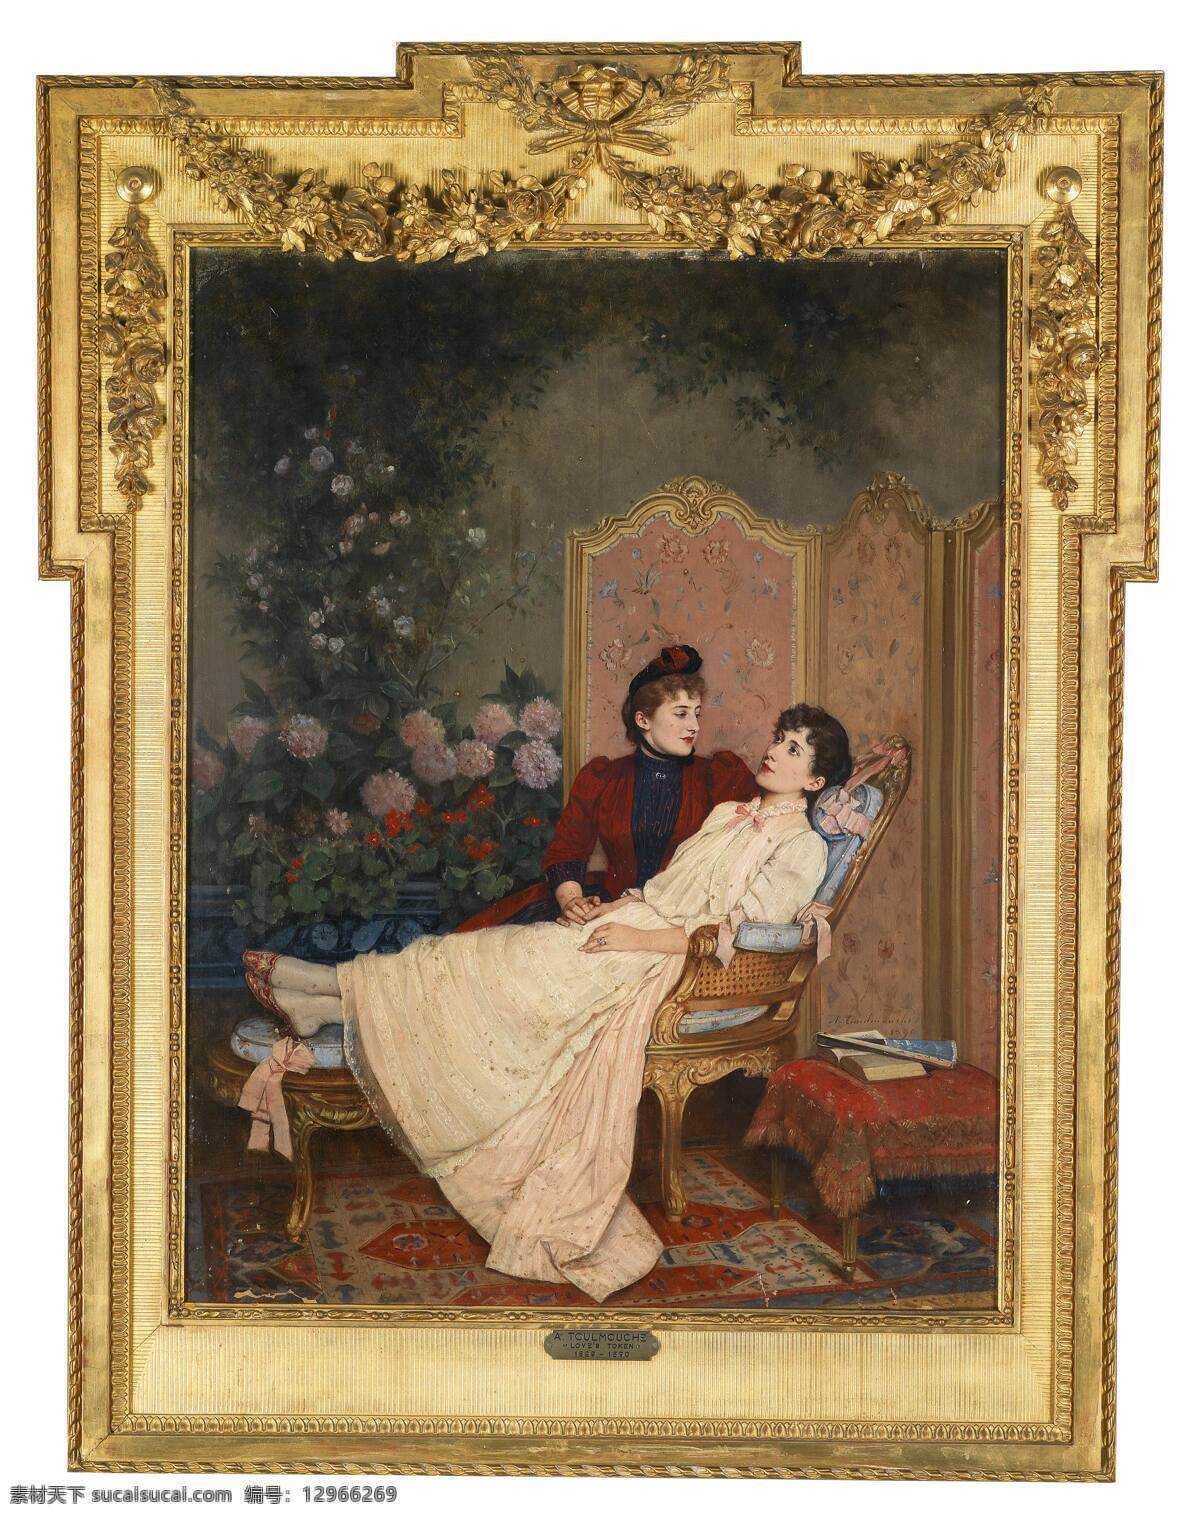 贵妇 贵族之家 菊花 围屏 两位贵妇人 闲聊 悠闲 19世纪油画 油画 绘画书法 文化艺术